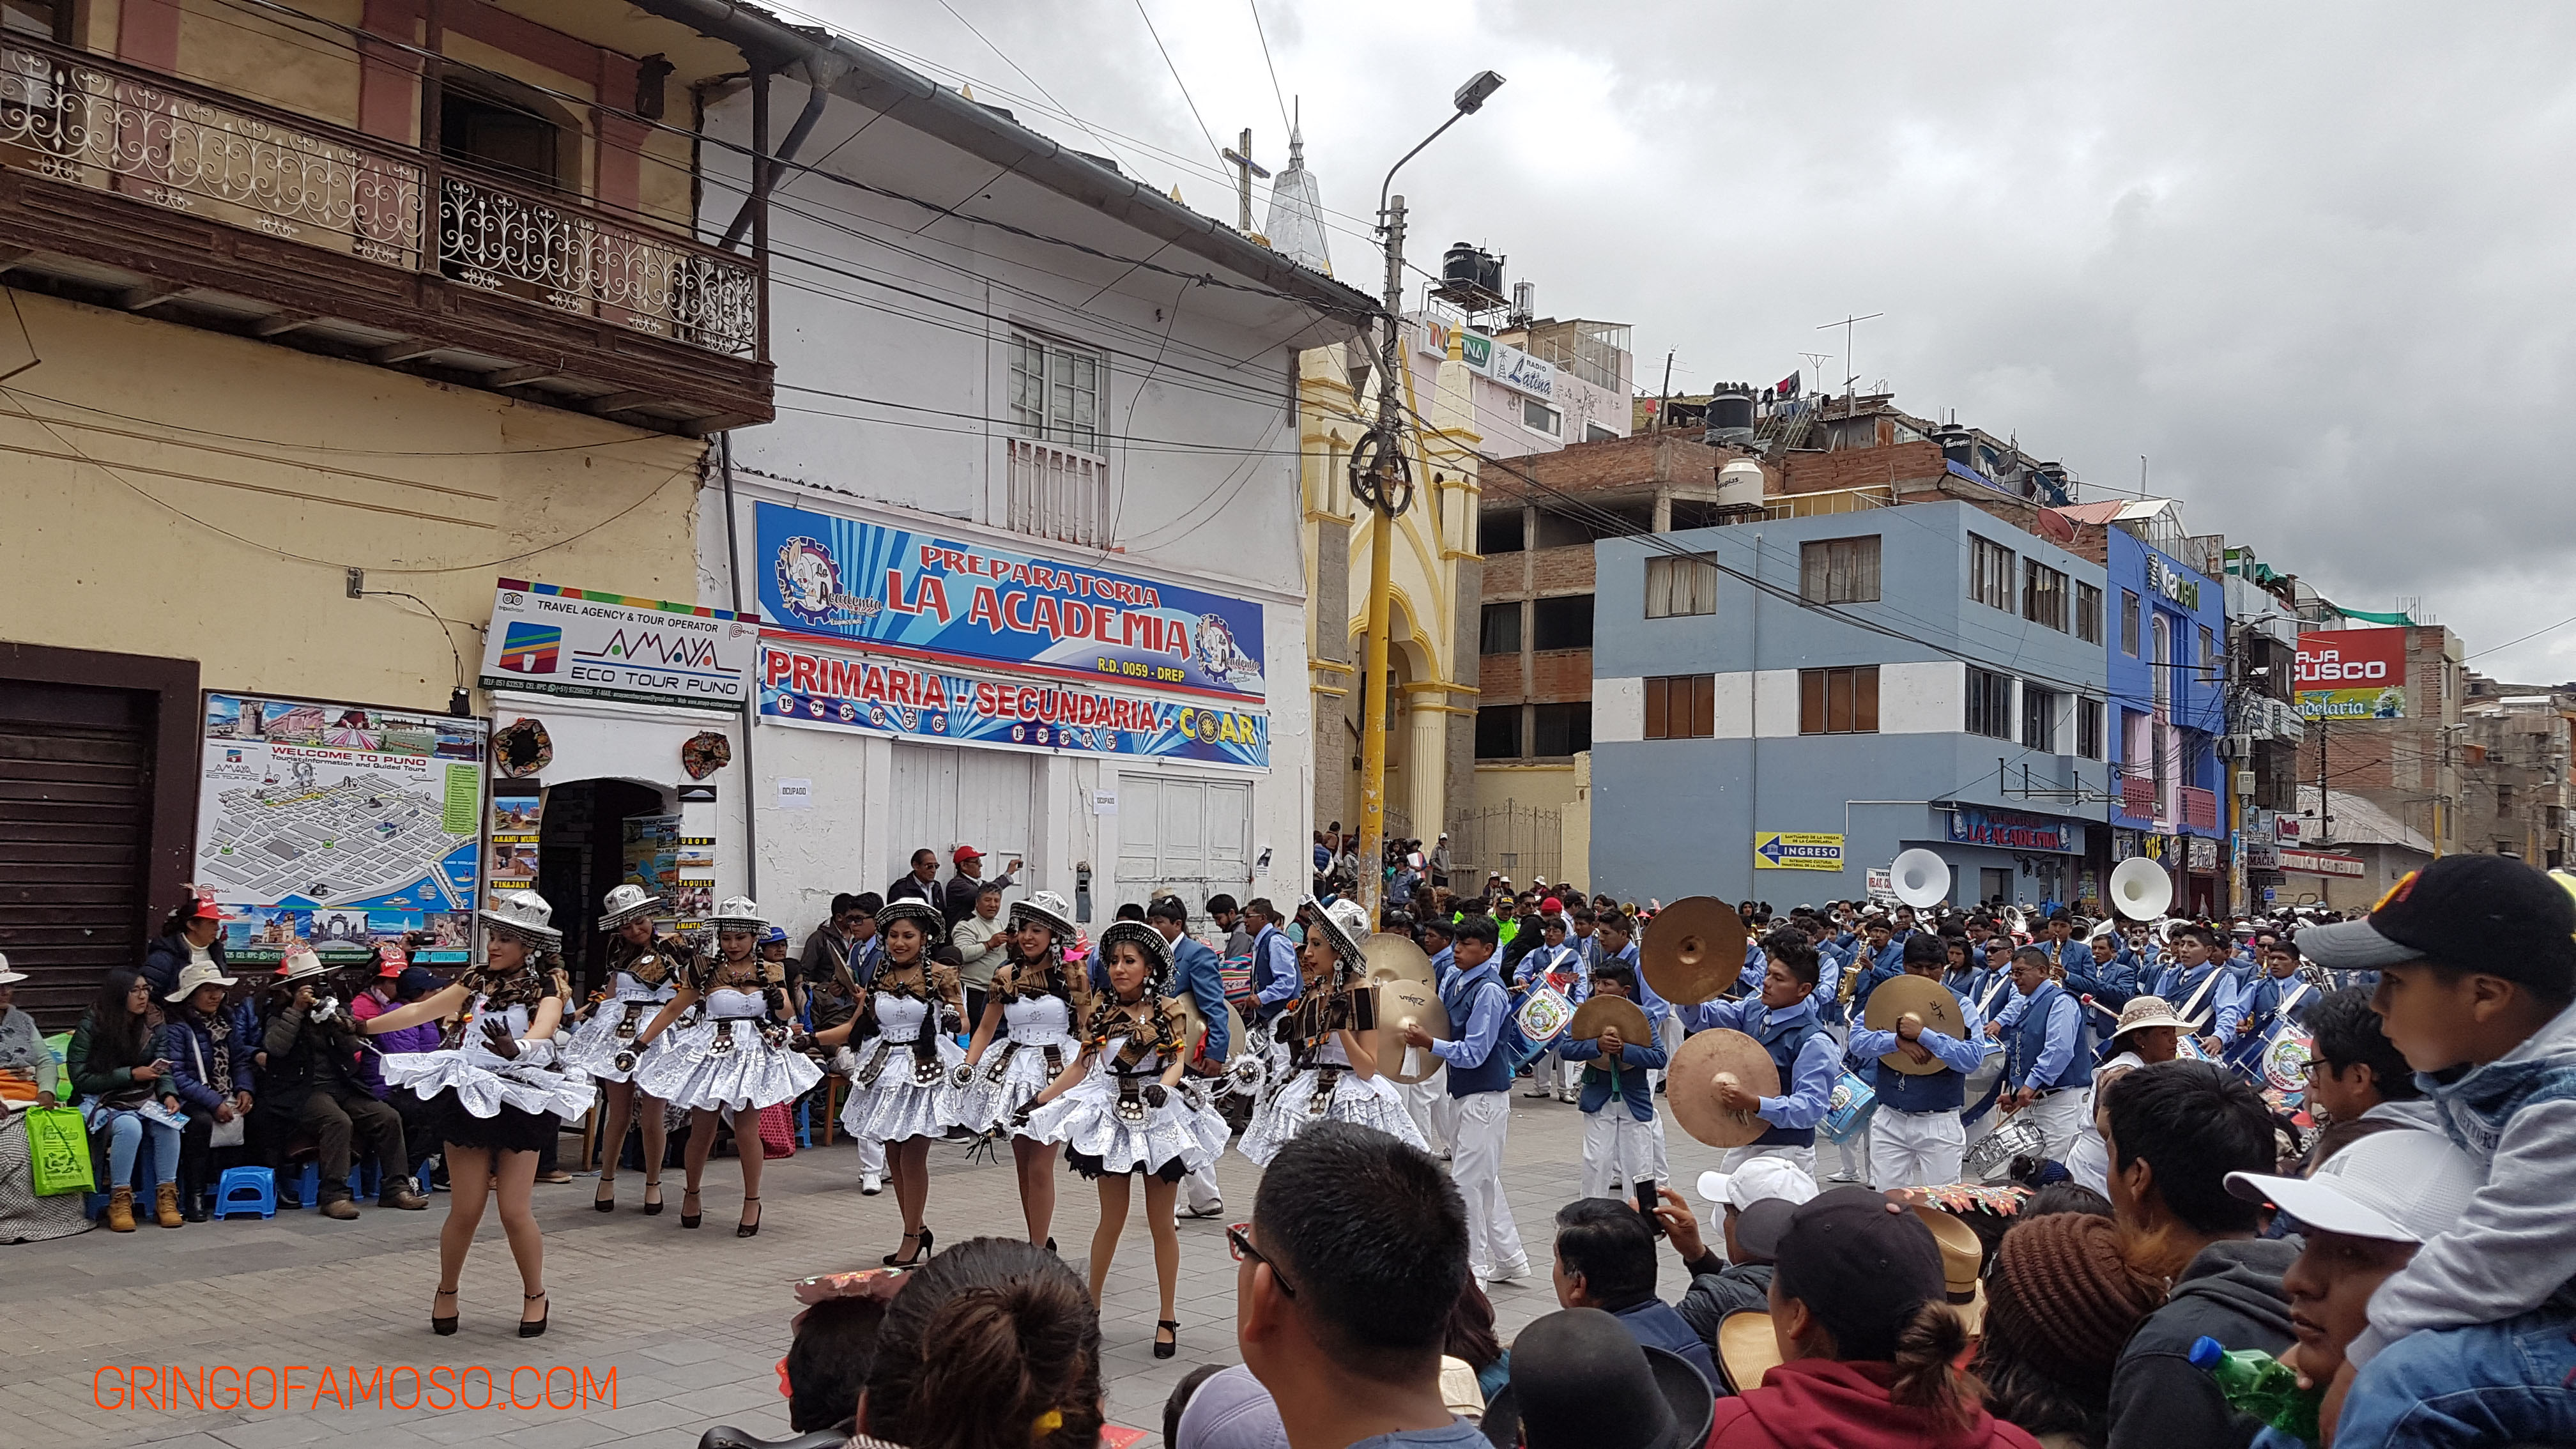 La Festividad de la Virgen de la Candelaria de Puno.